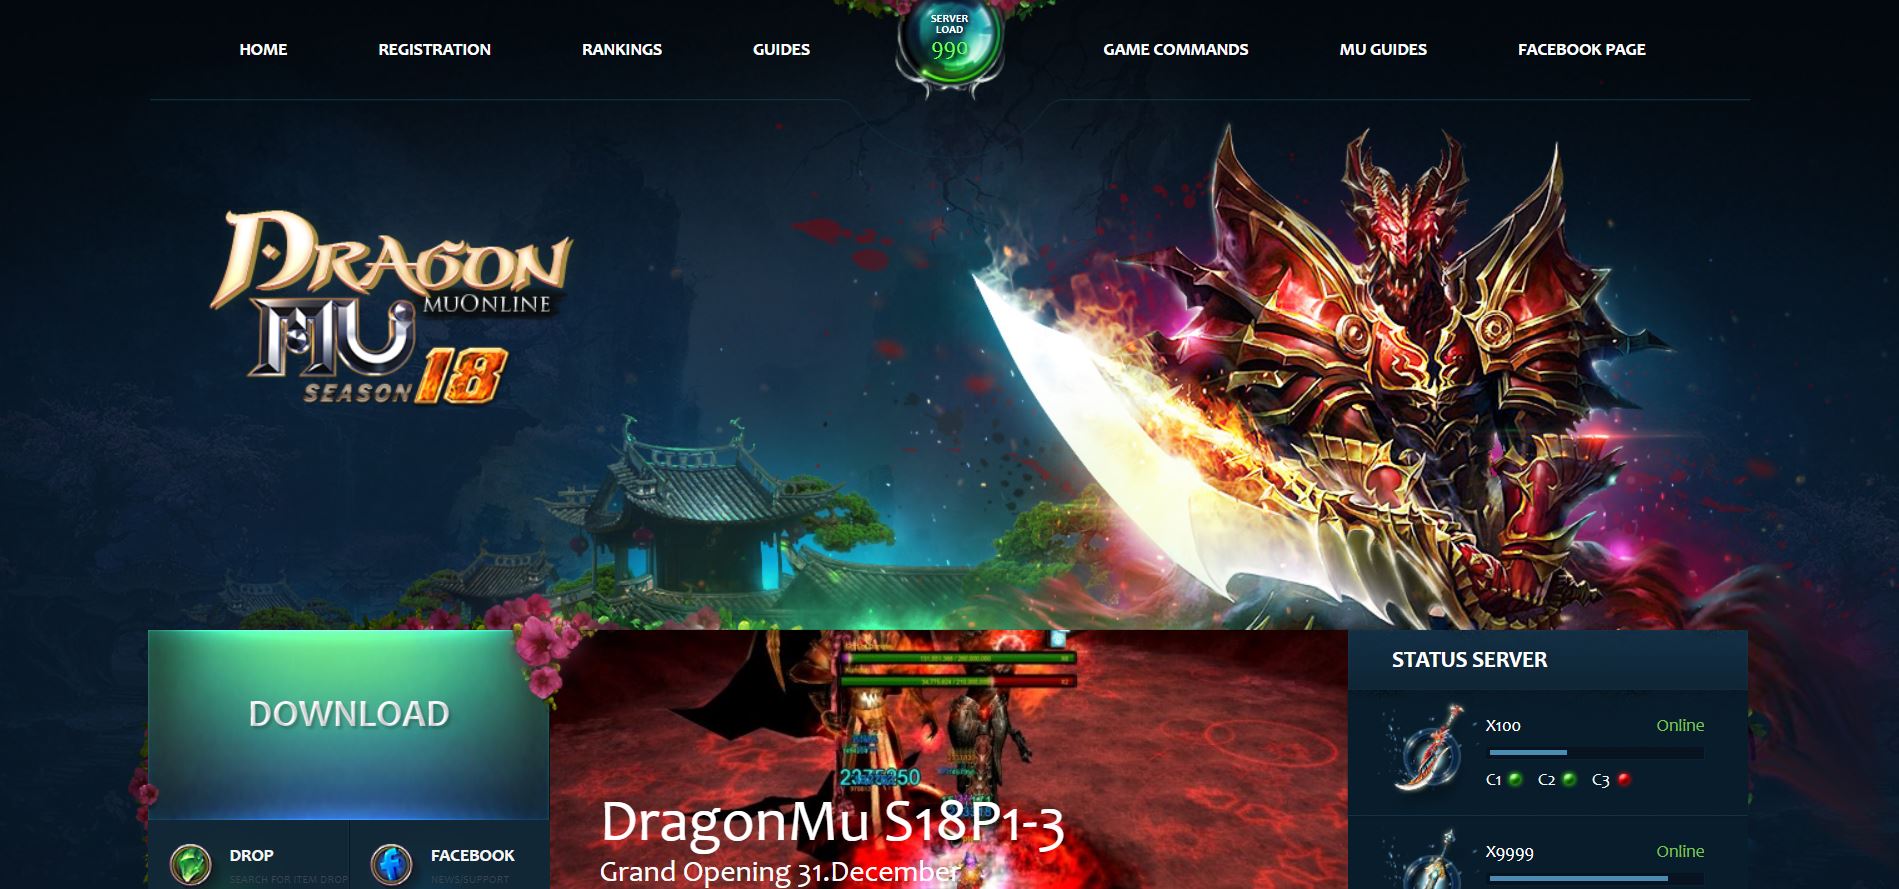 🐉 Відкрийте Драконів Ворота! MuOnline Season 18 x999k - Dragonmu.net 🐉